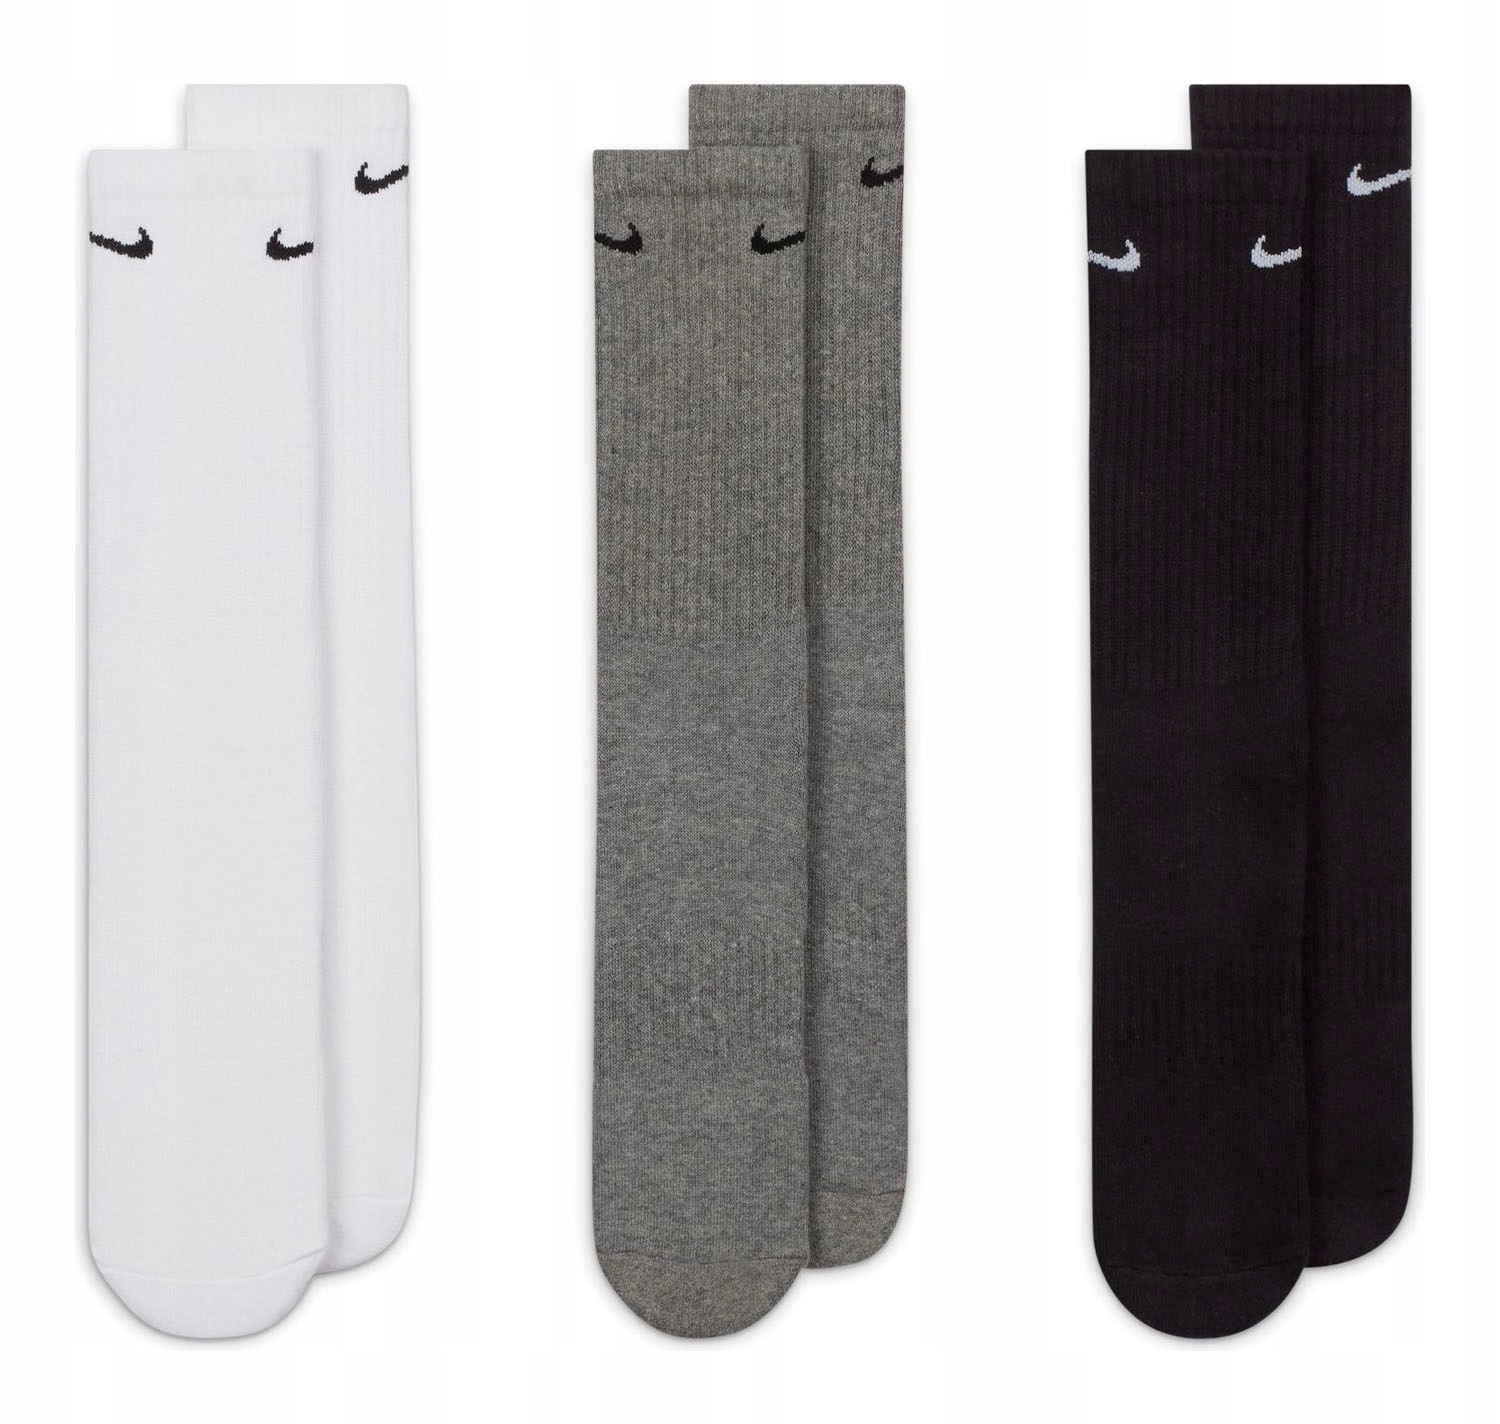 Ponožky Nike Everyday Cushioned v 3 balení